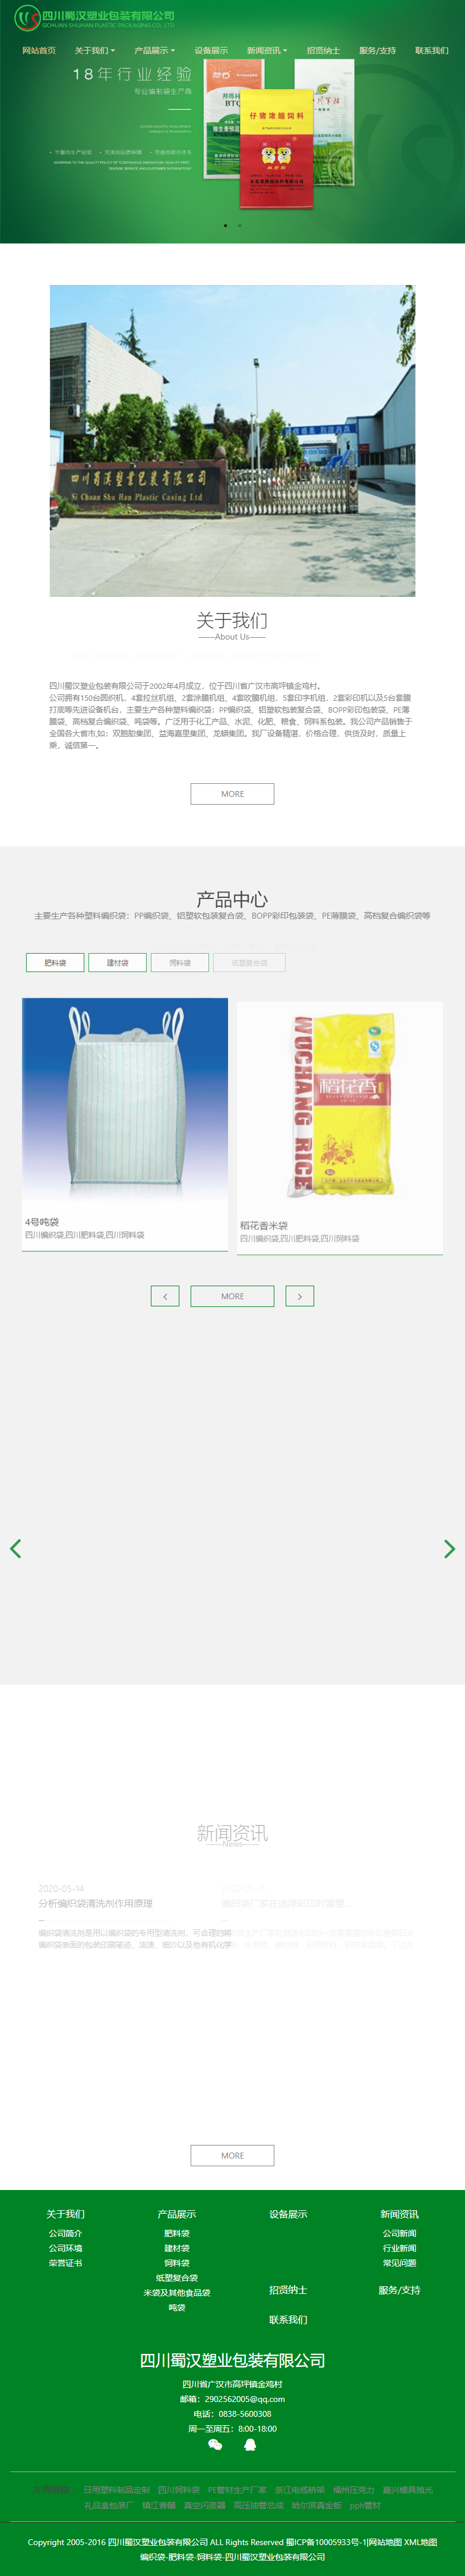 四川蜀汉塑业包装有限公司网站案例